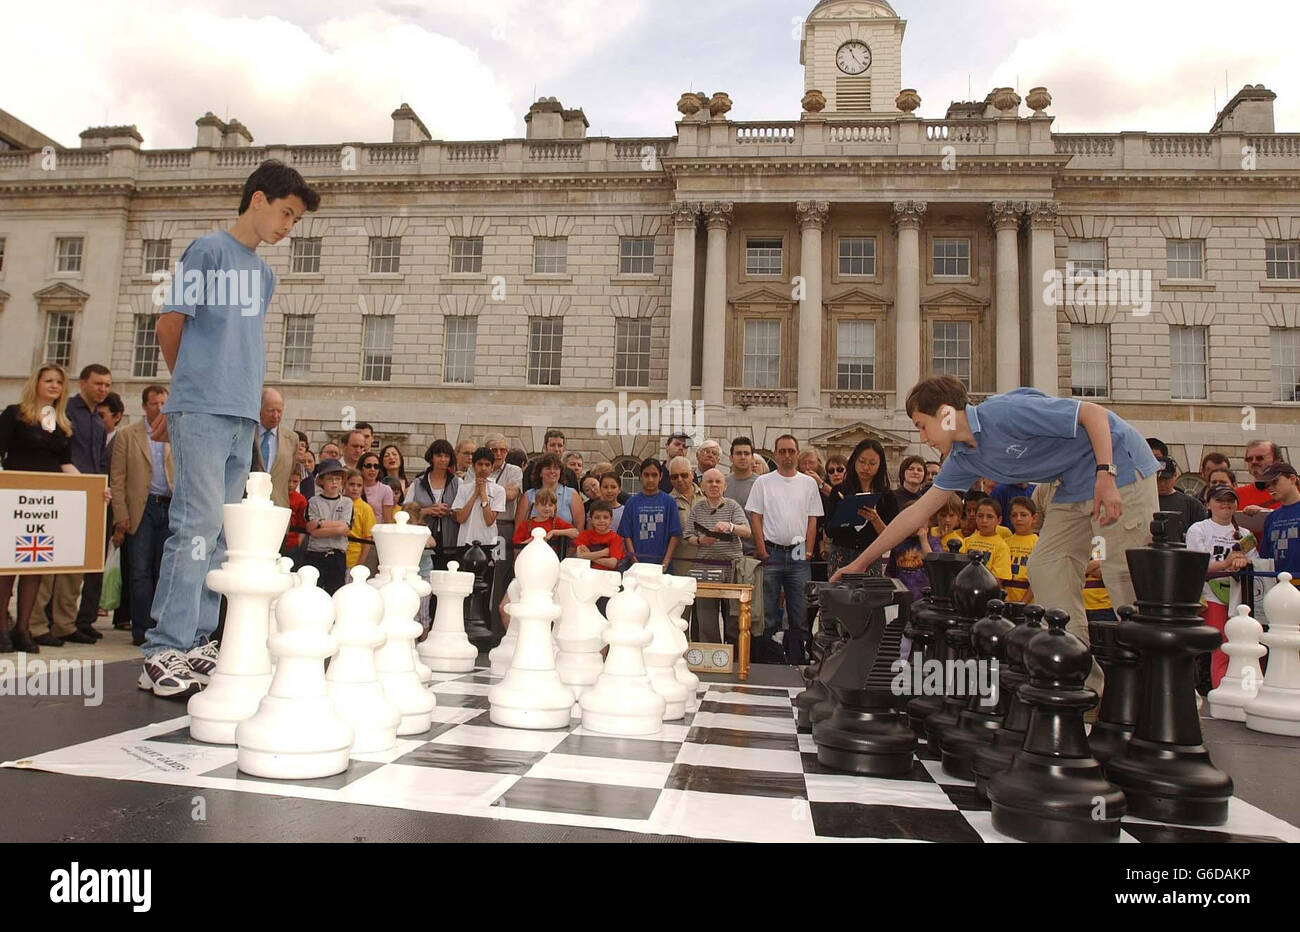 Der 12-jährige David Howell aus Eastbourne, East Sussex spielt den Ukrainer, der 13-jährige Großmeister Sergei Karjakin (R) im Somerset House in London. Das heutige Spiel markierte die Eröffnung der Ausstellung "Art of Chess", die 19 Schachsätze vom frühen 20. Jahrhundert bis zur Gegenwart im Somerset House zeigt. Stockfoto